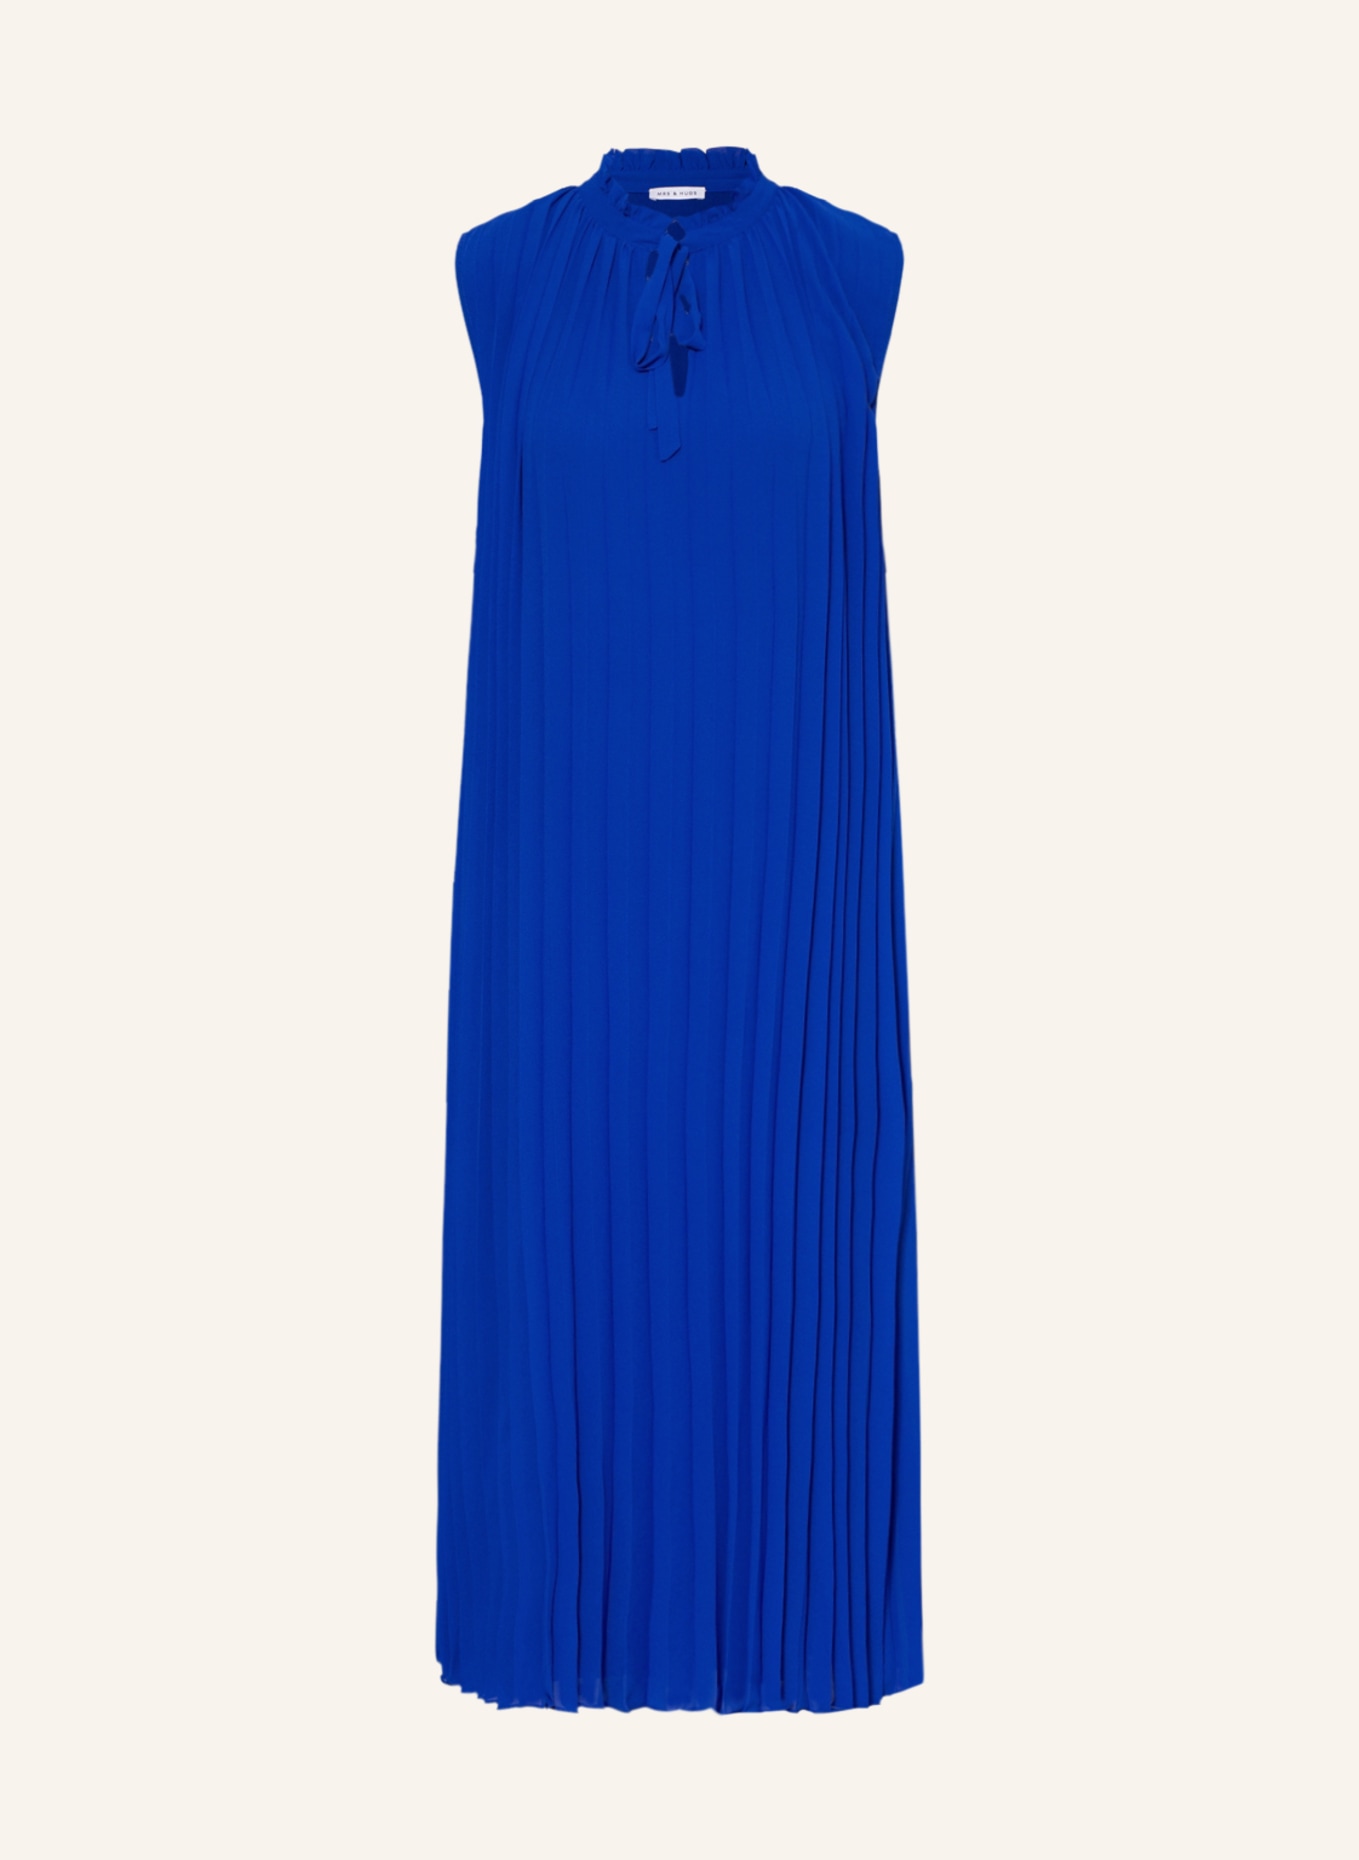 MRS & HUGS Pleated dress, Color: BLUE (Image 1)